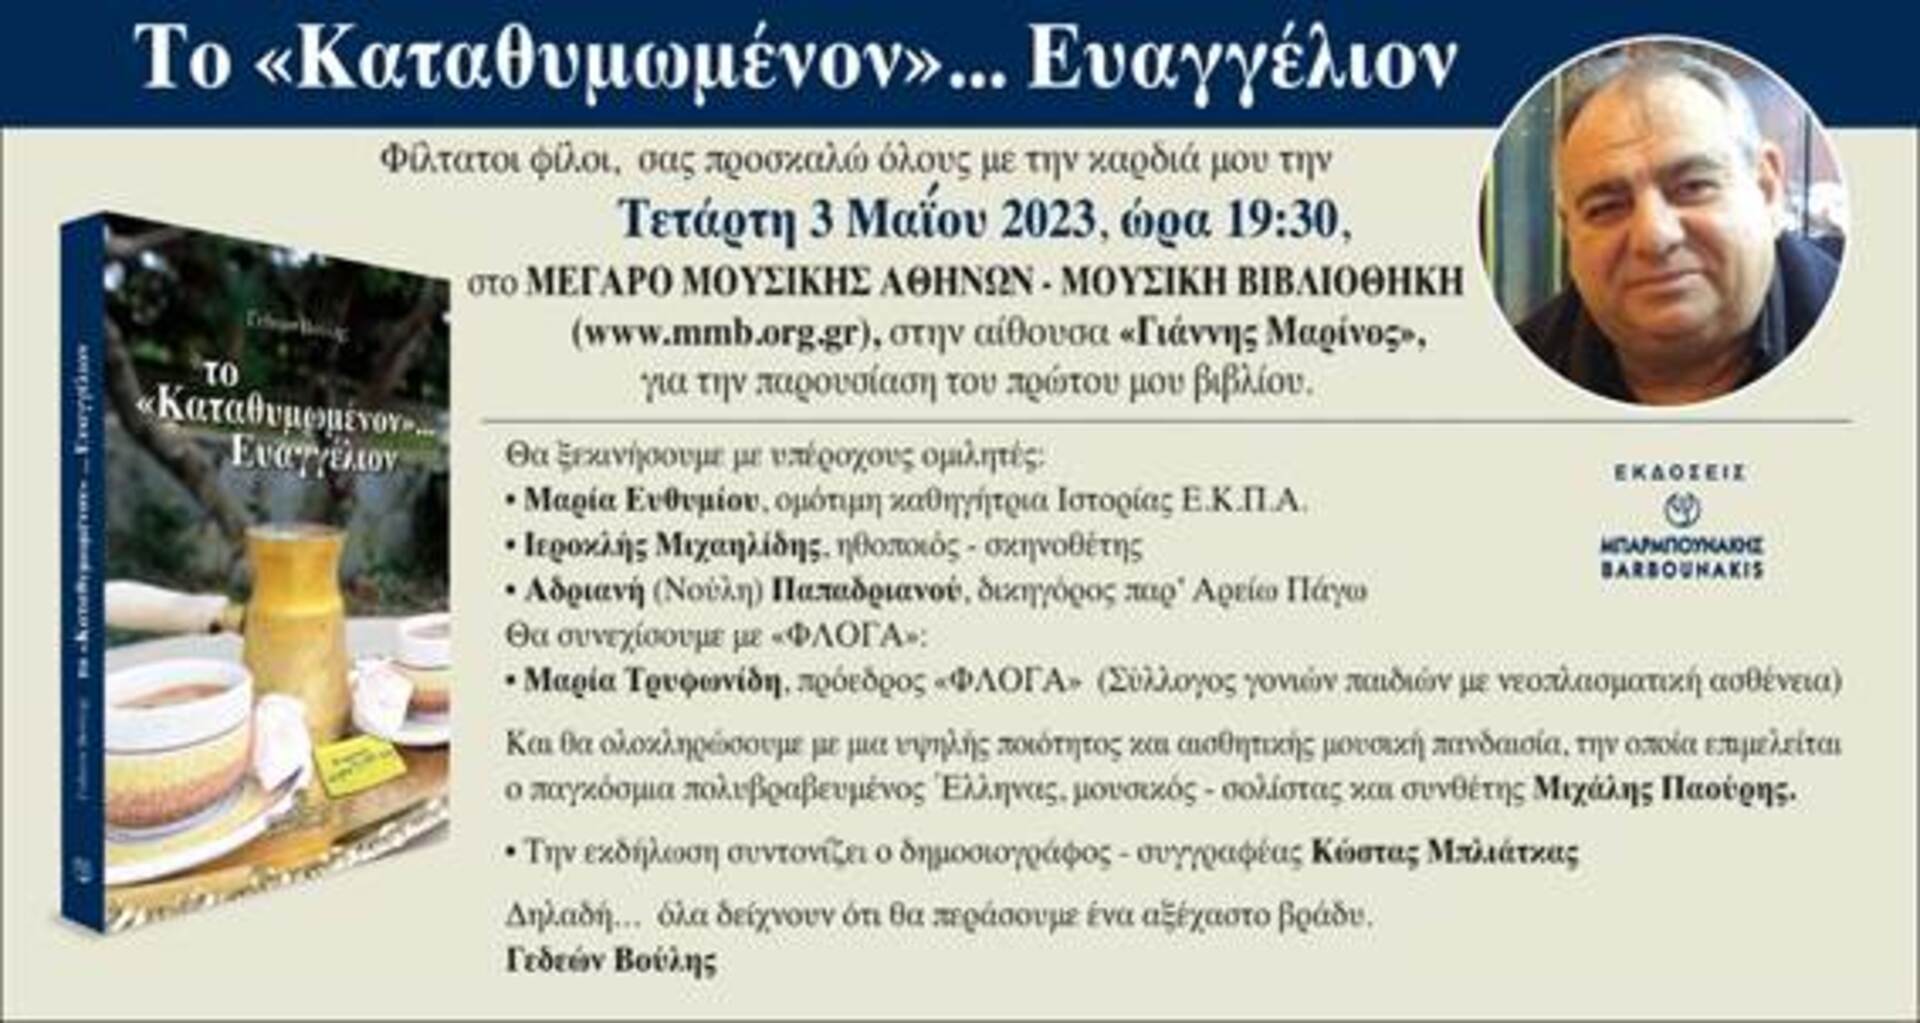 Το 'Καταθυμωμένον…Ευαγγέλιον'  του Γεδεών Βουλή υπέρ τηε 'Φλόγας' παρουσιάζεται  στην Αθήνα